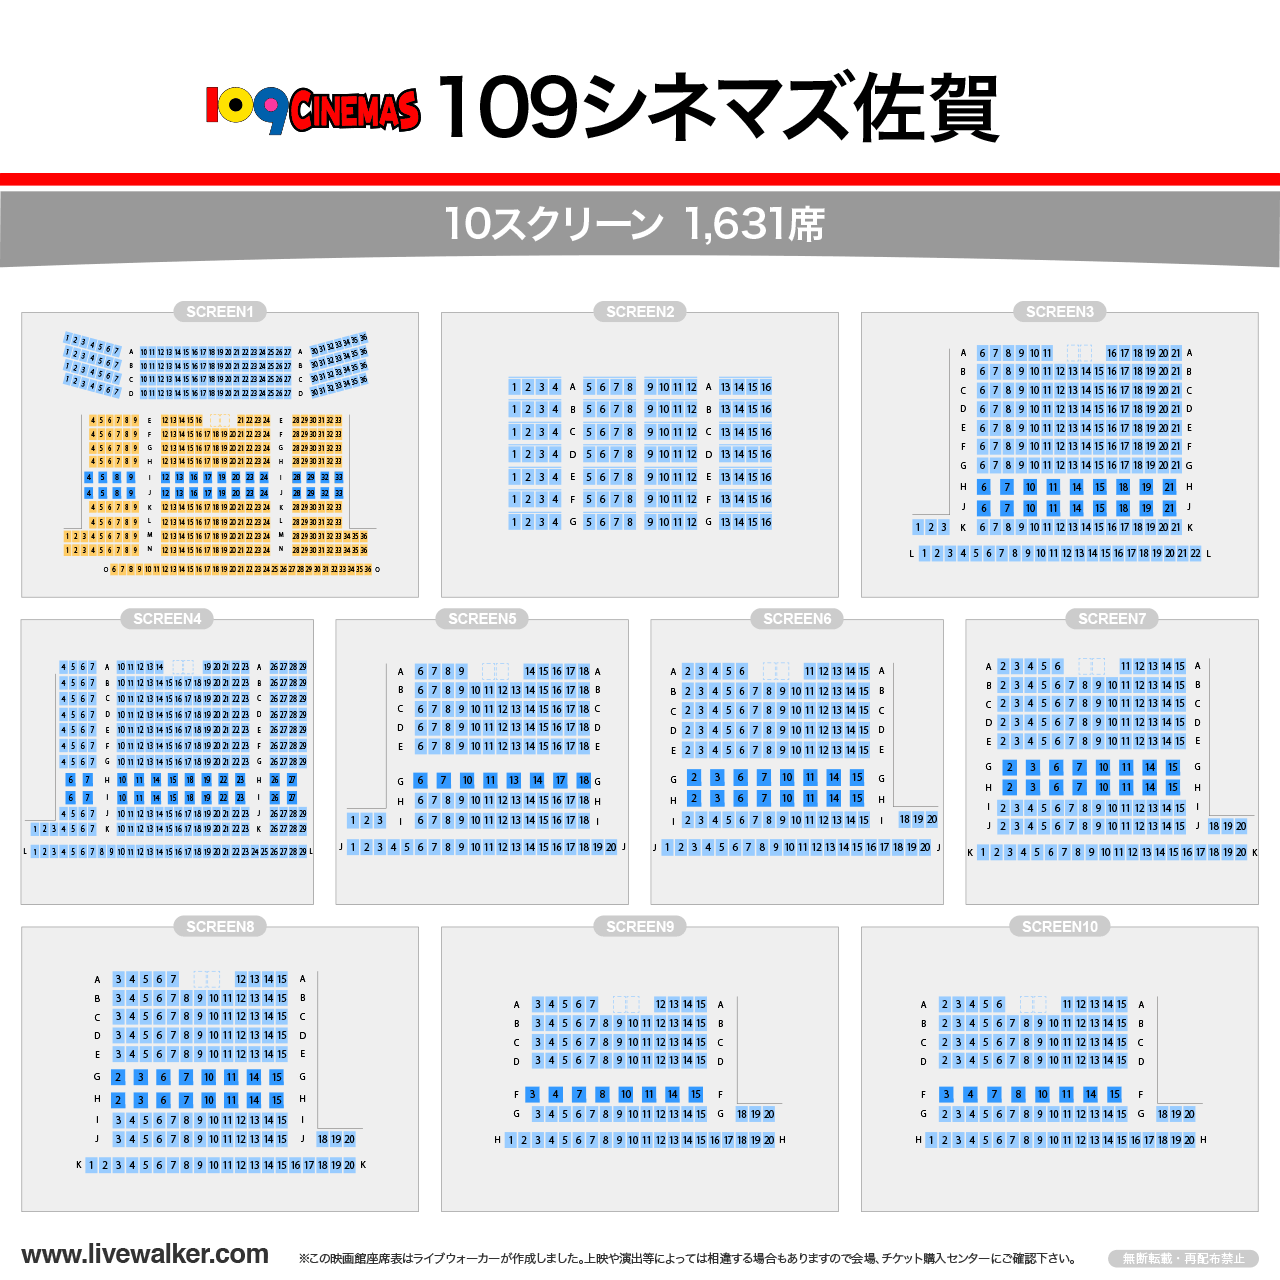 109シネマズ佐賀シアターの座席表